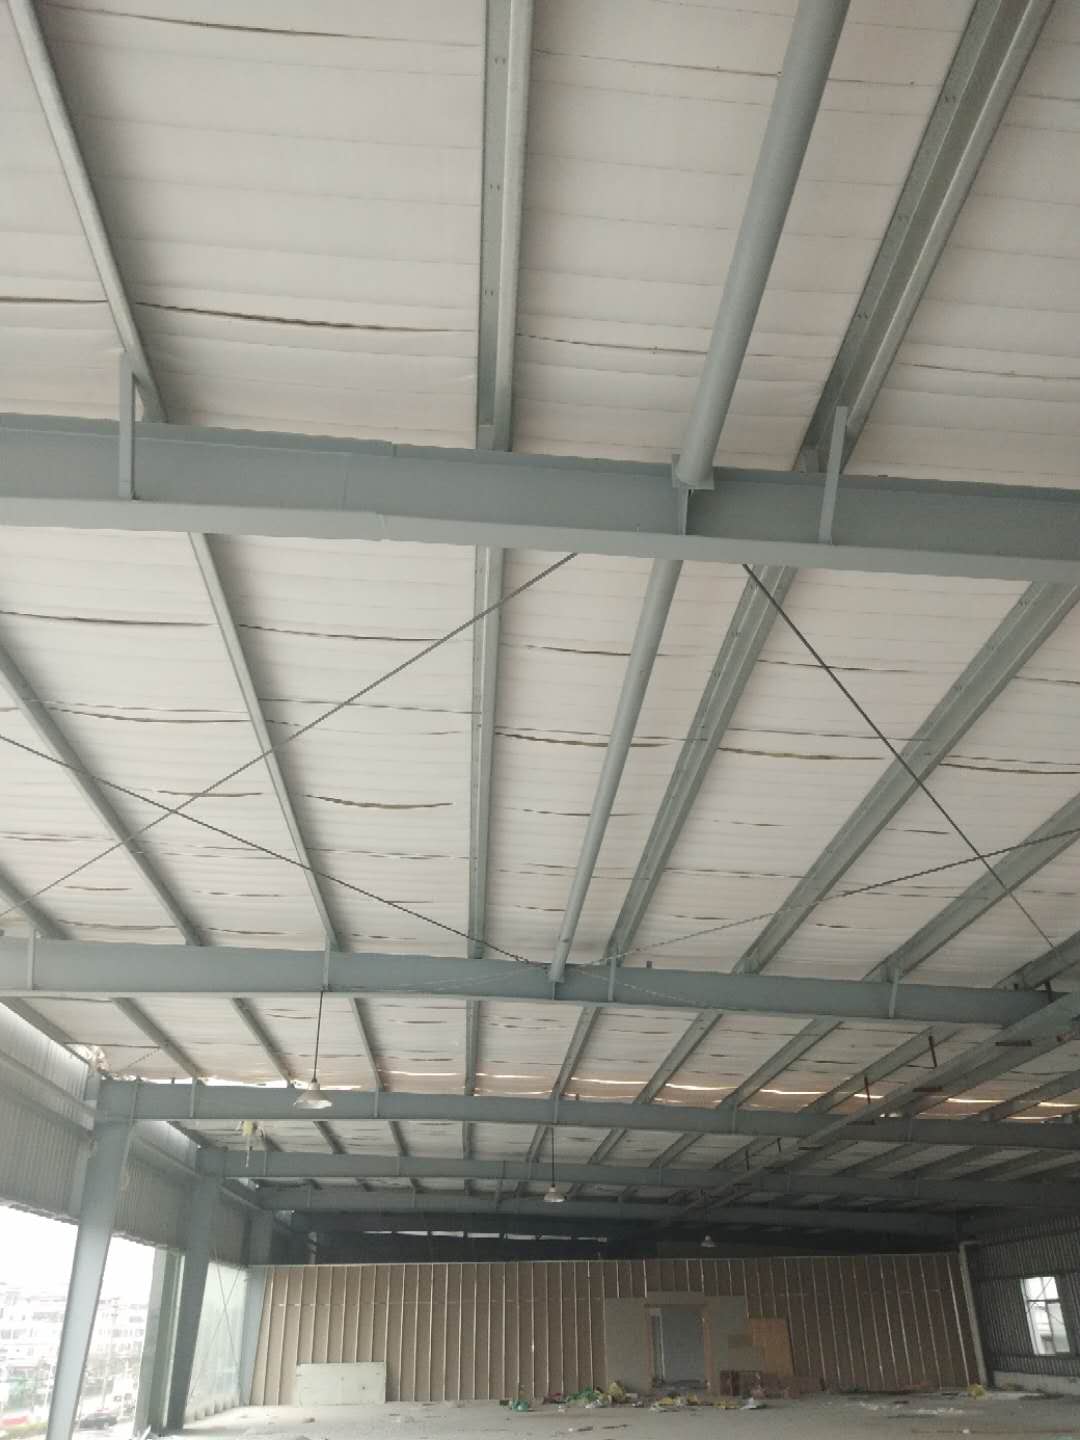 揭阳市钢结构工程有限公司 提供搭建板房、每平方铁棚树脂瓦更换价格